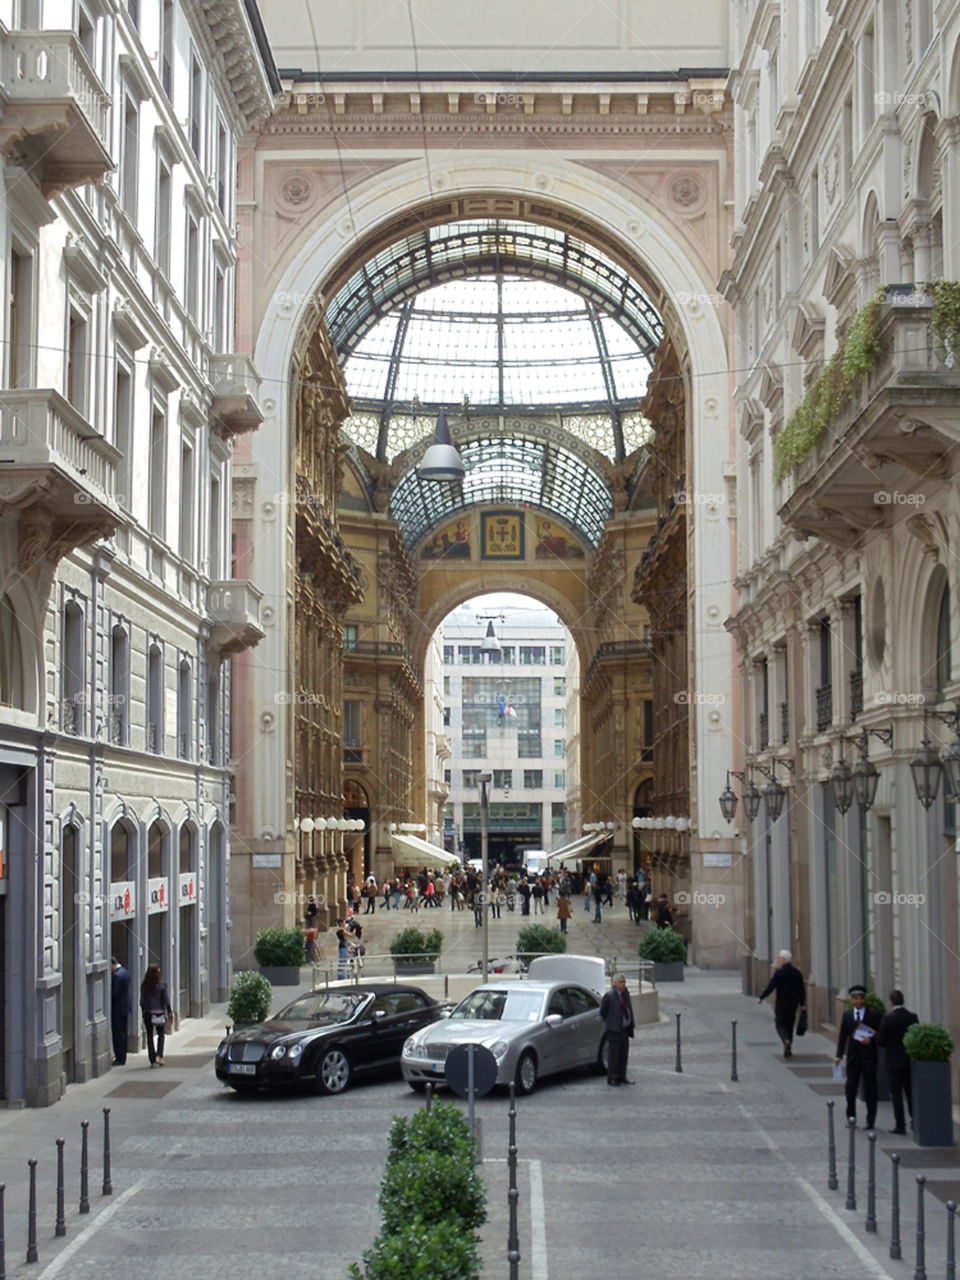 Galeria
Milan, Italy